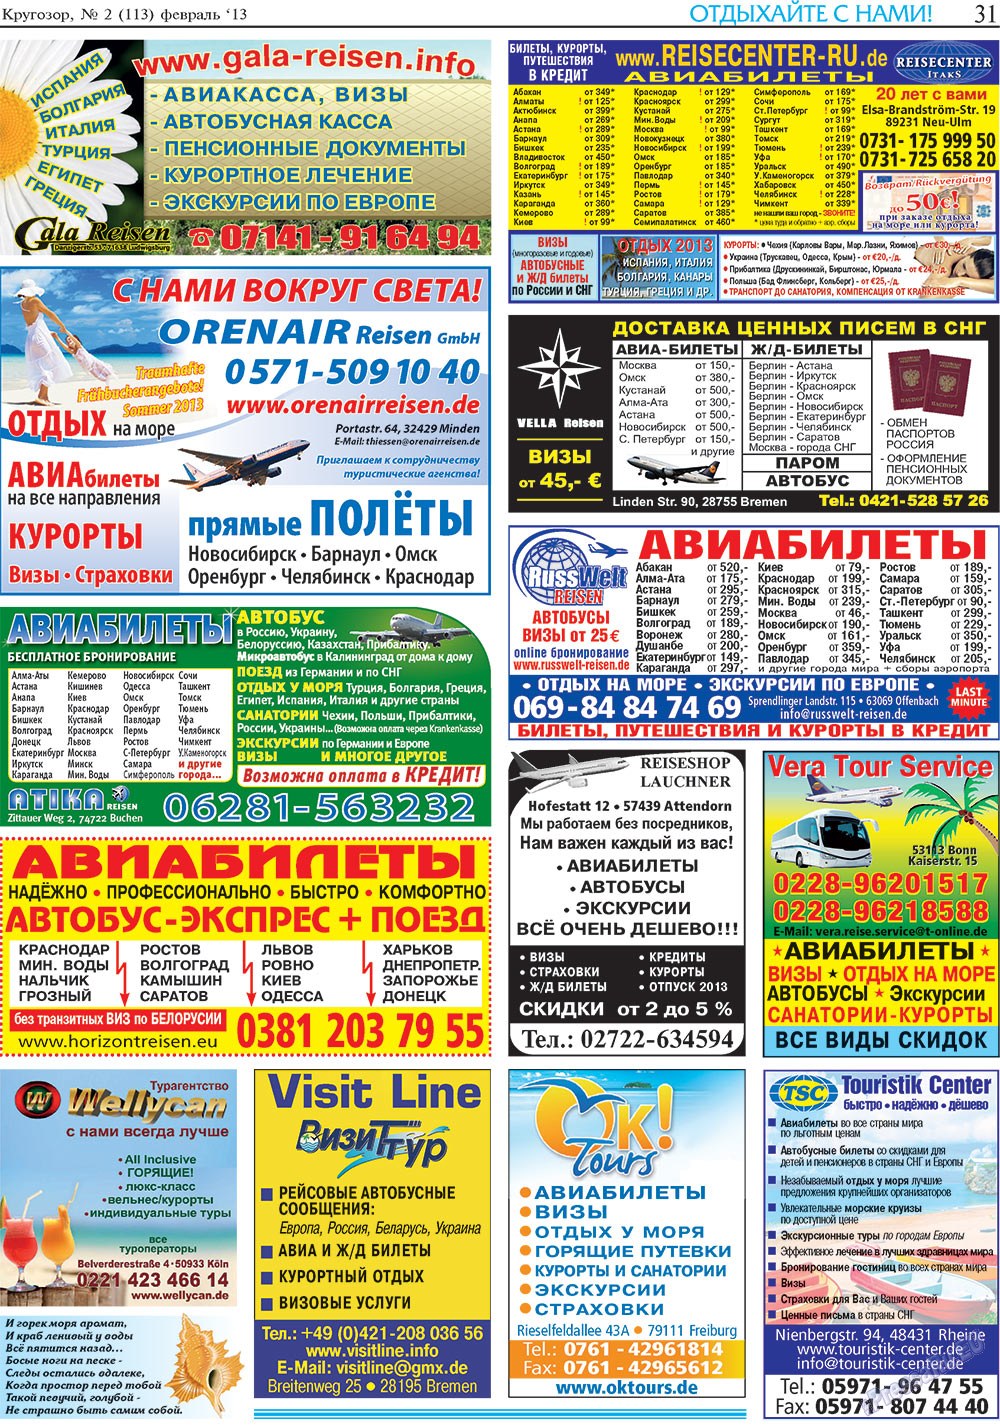 Кругозор, газета. 2013 №2 стр.31